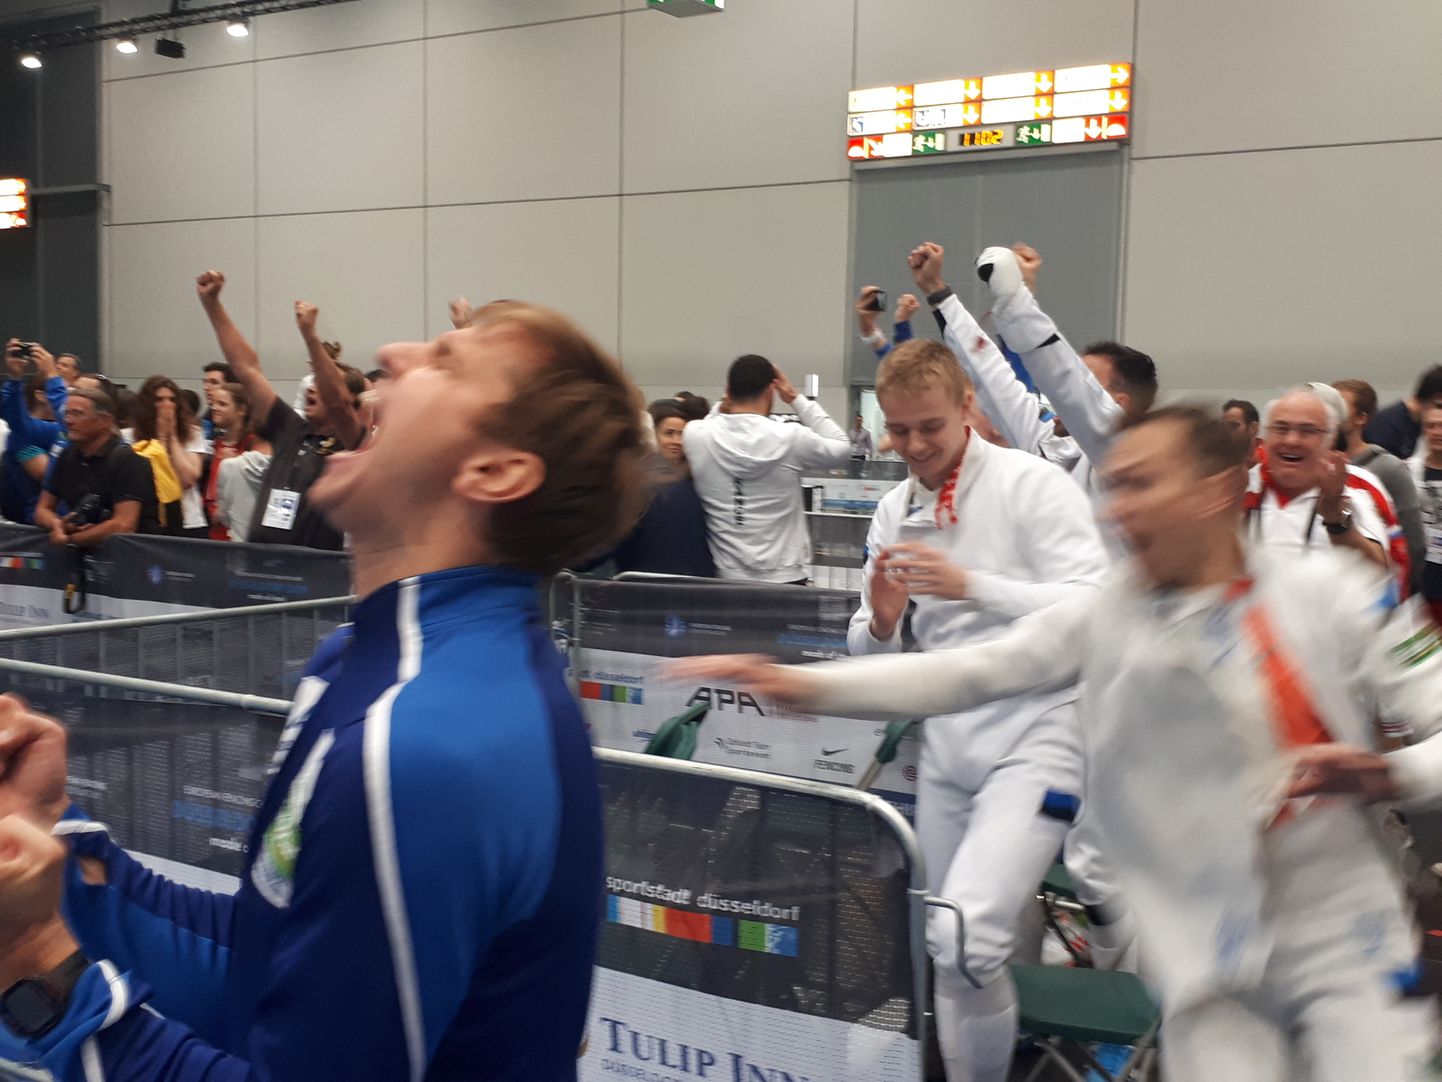 Niimoodi rõõmustasid Nikolai Novosjolov ja Eesti meeskond juunikuus Düsseldorfis peetud EMil pärast võitu Prantsusmaa üle.